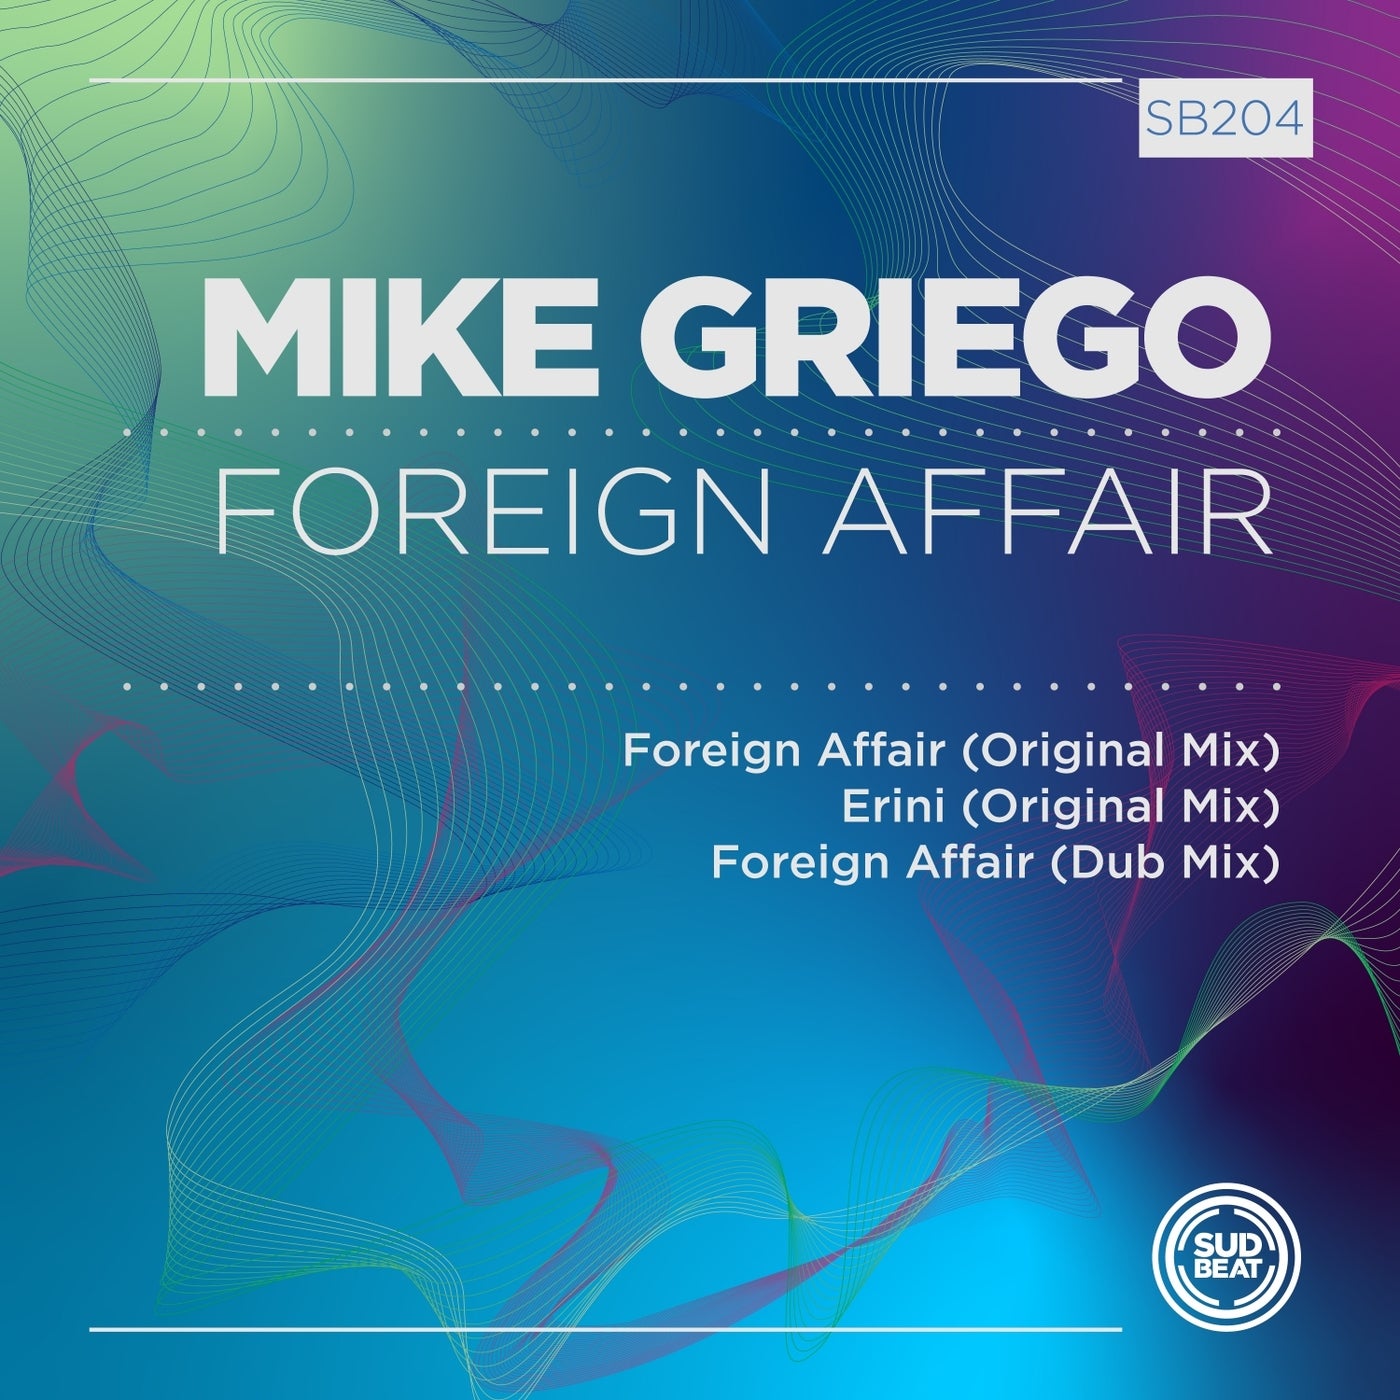 Mike Griego - Foreign Affair (Original Mix)